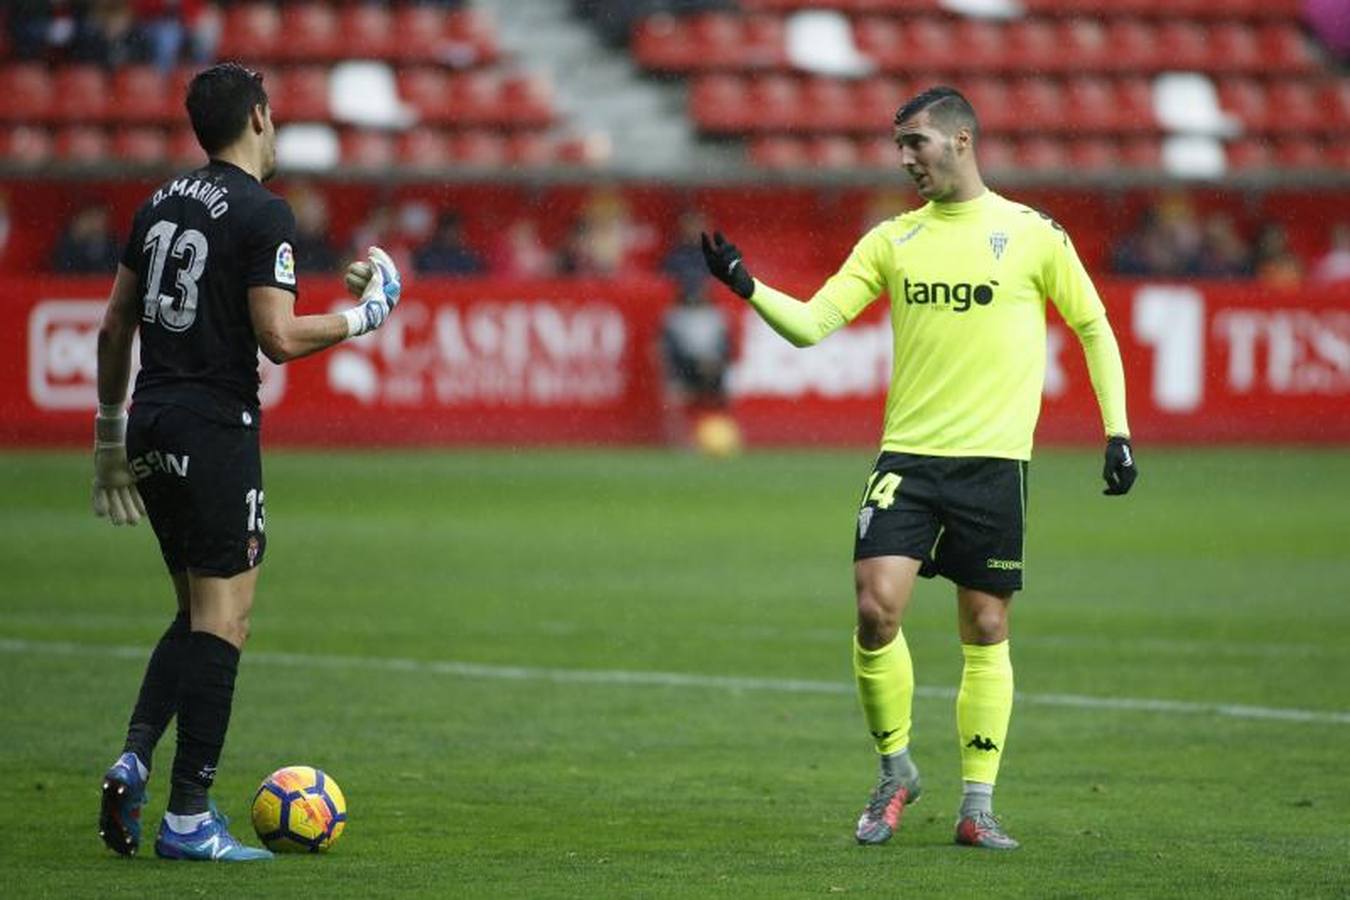 El Sporting de Gijón-Córdoba CF, en imágenes